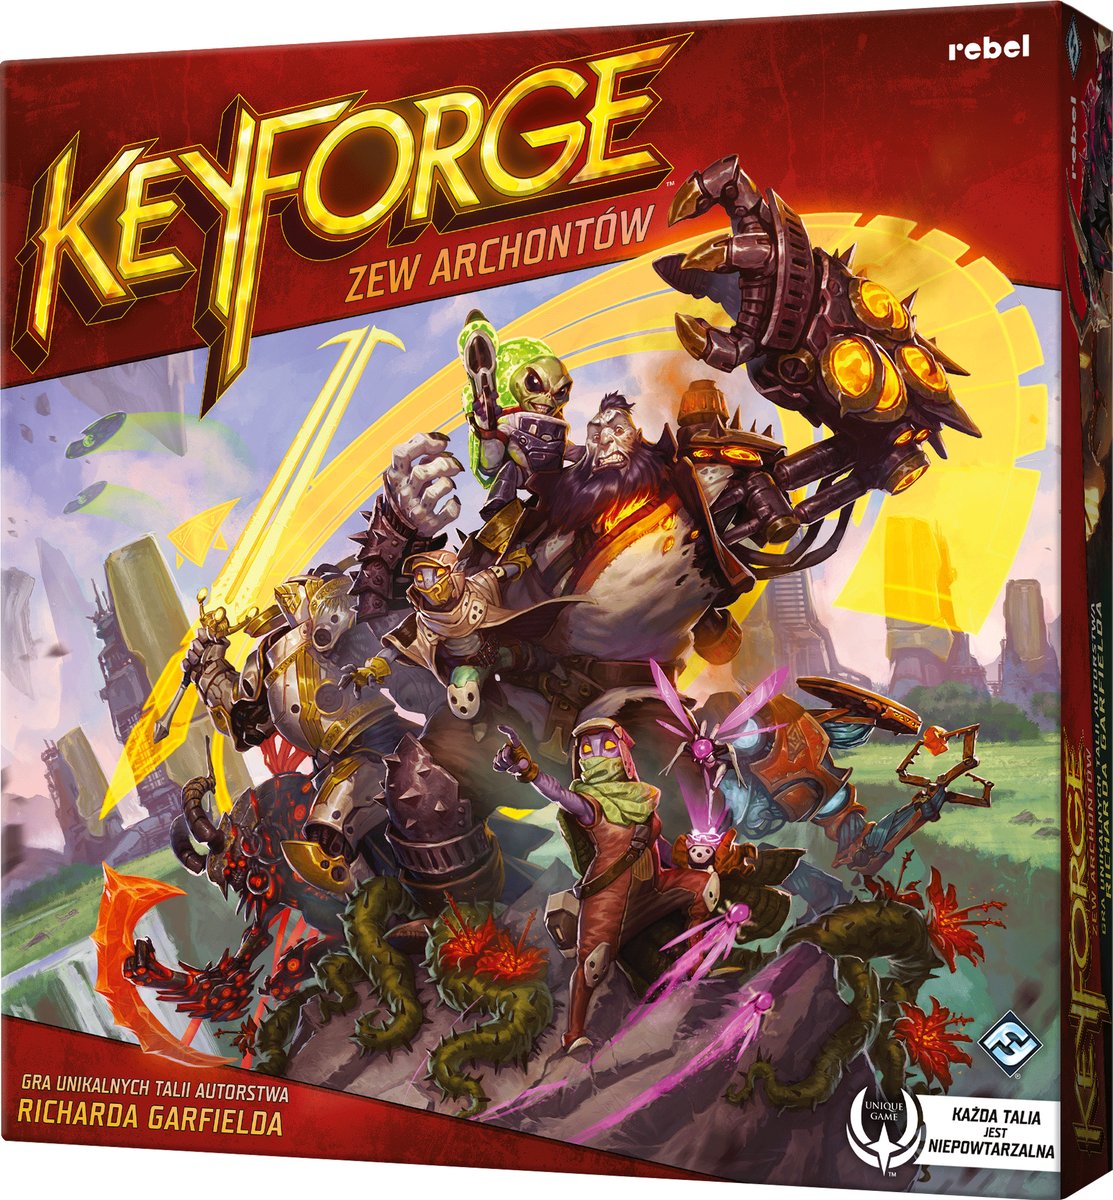 KeyForge Zew Archontów Pakiet startowy, gra karciana, Rebel